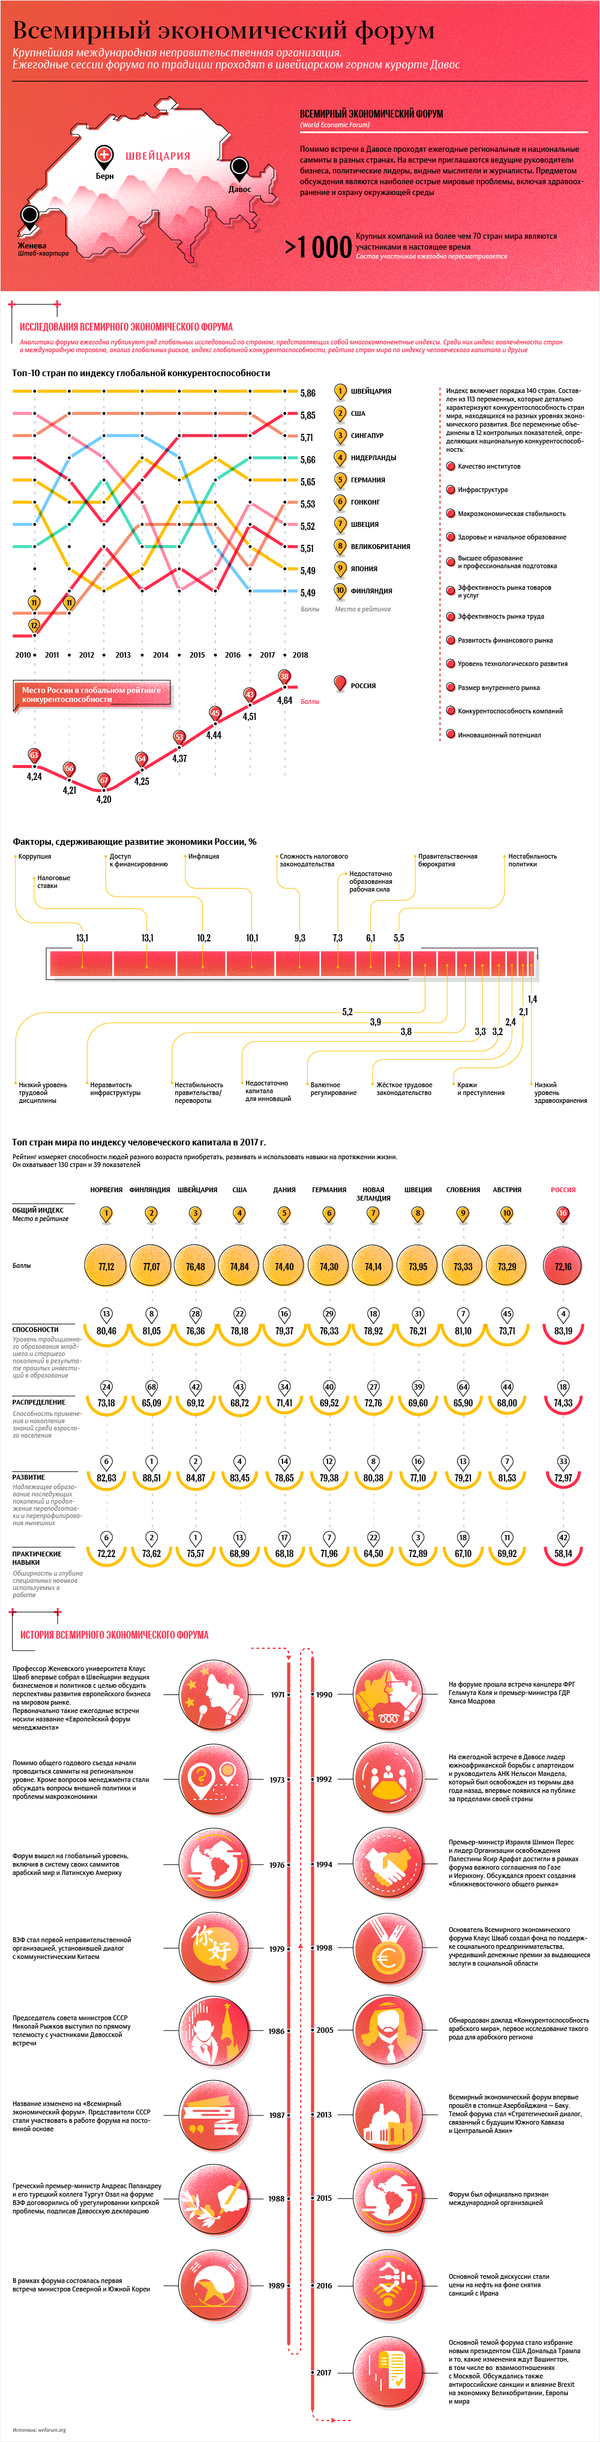 Всемирный экономический форум – инфографика на sputnik.by - Sputnik Беларусь